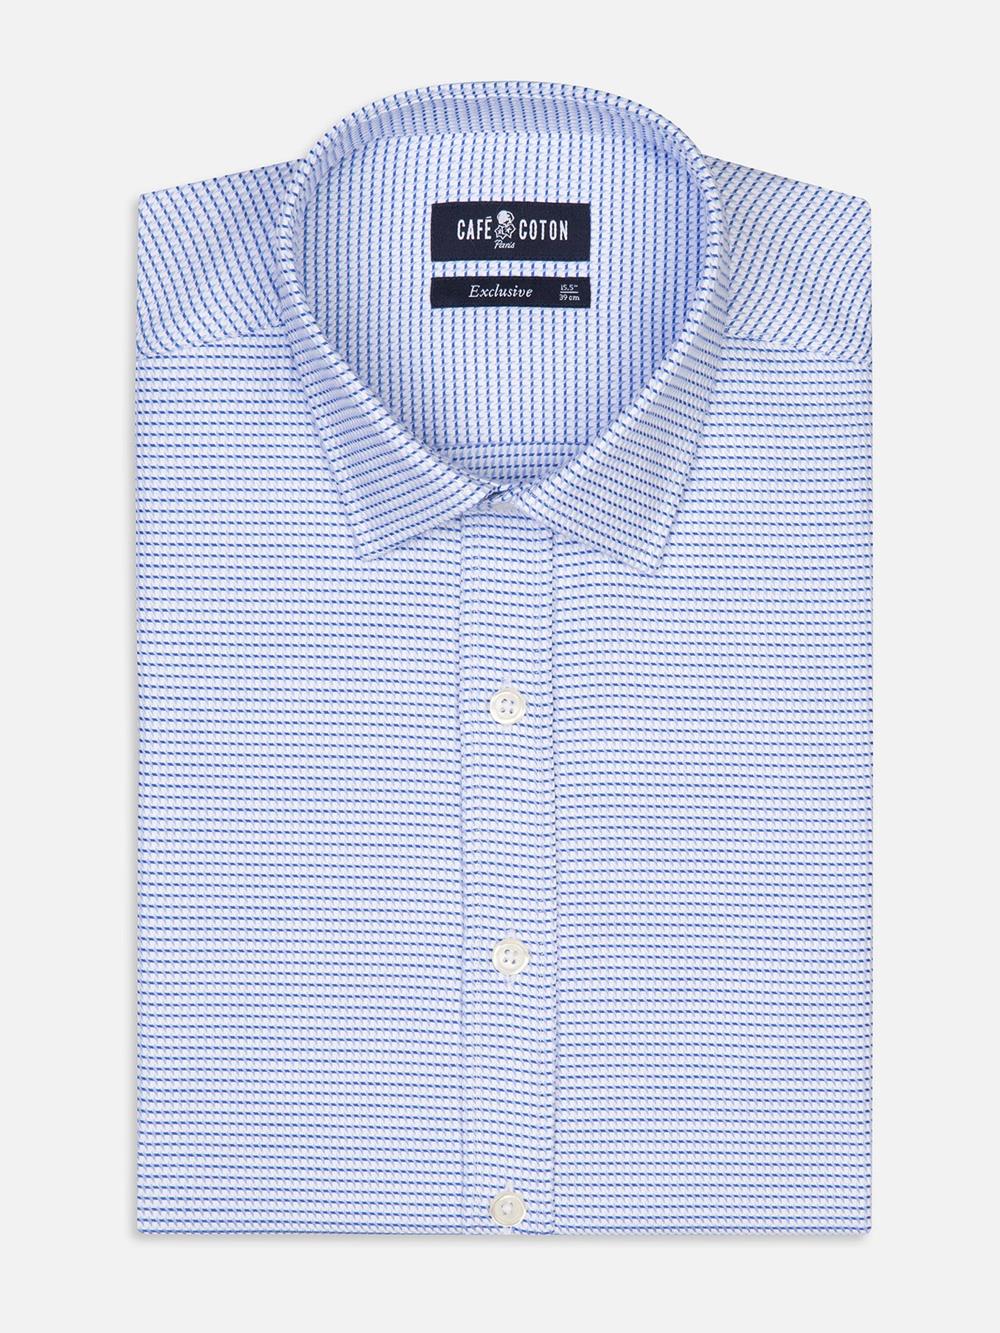 Tailliertes Walt-Hemd aus himmelblauem Twill - Kurzem Kragen